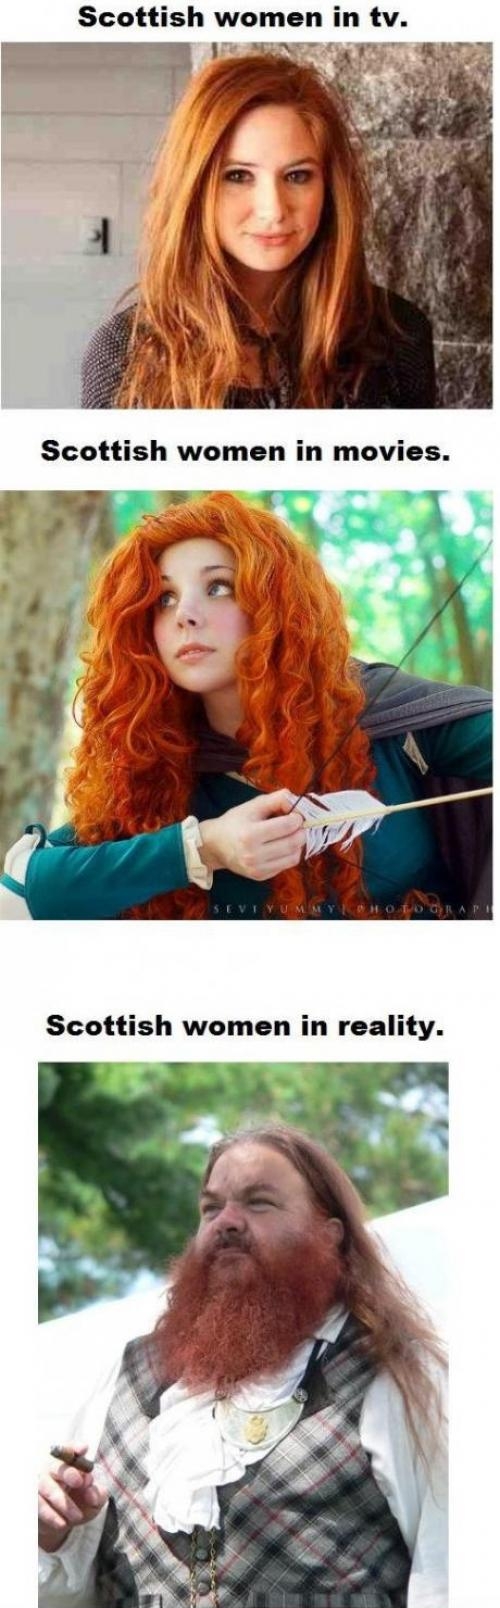 Scottish women.